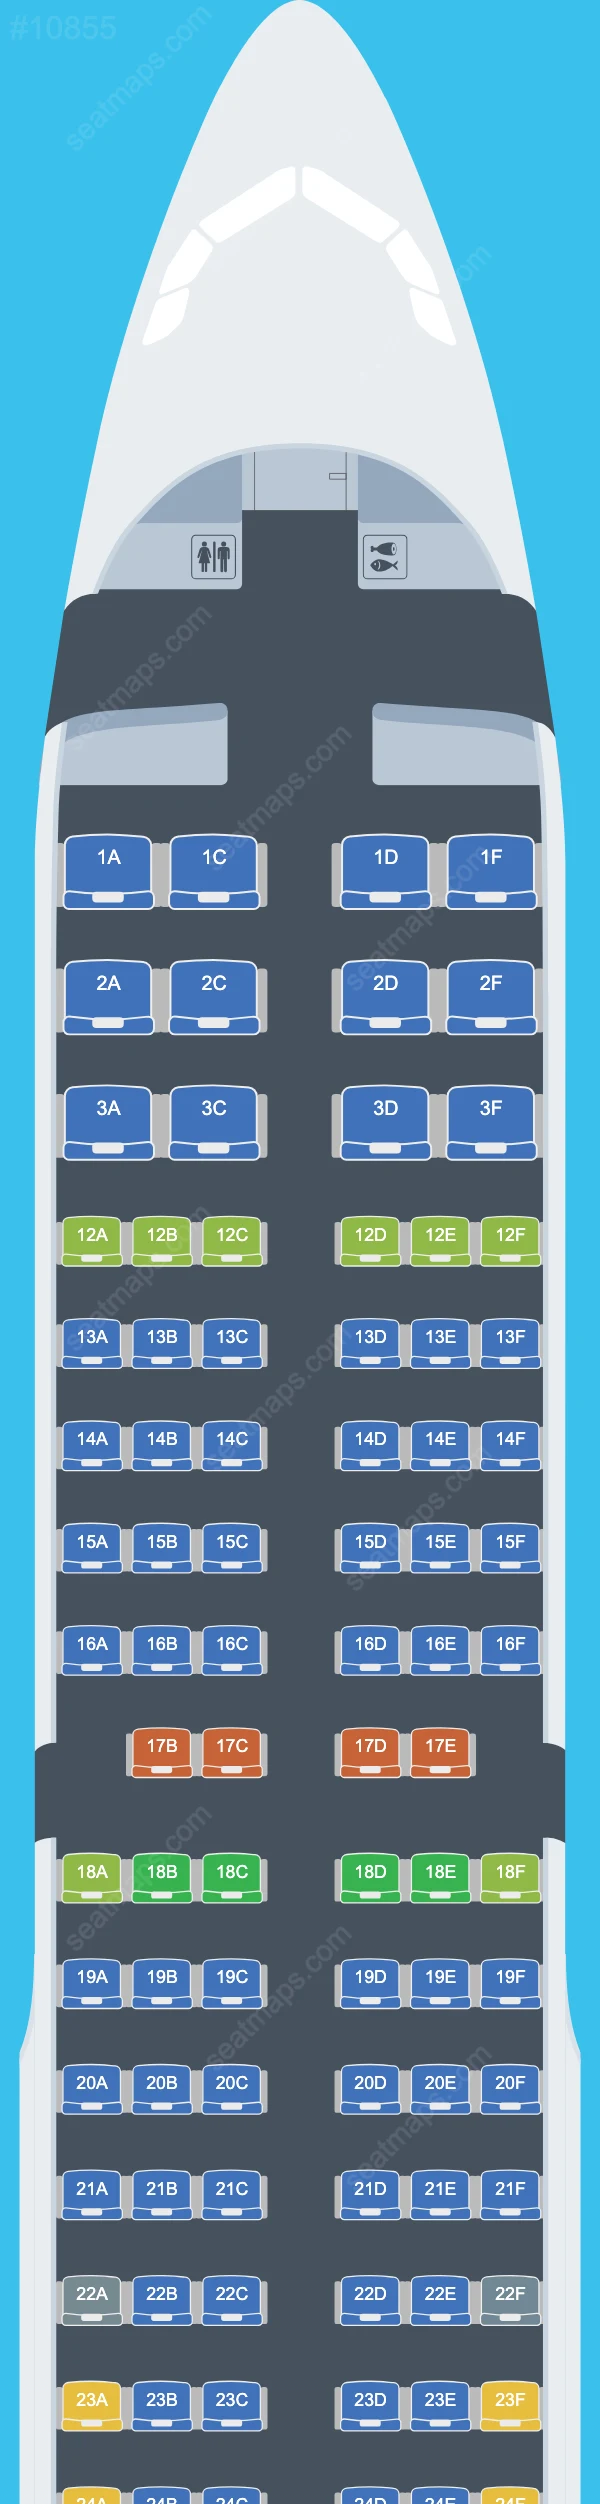 Air Canada Airbus A321 Seat Maps A321-200 V.3